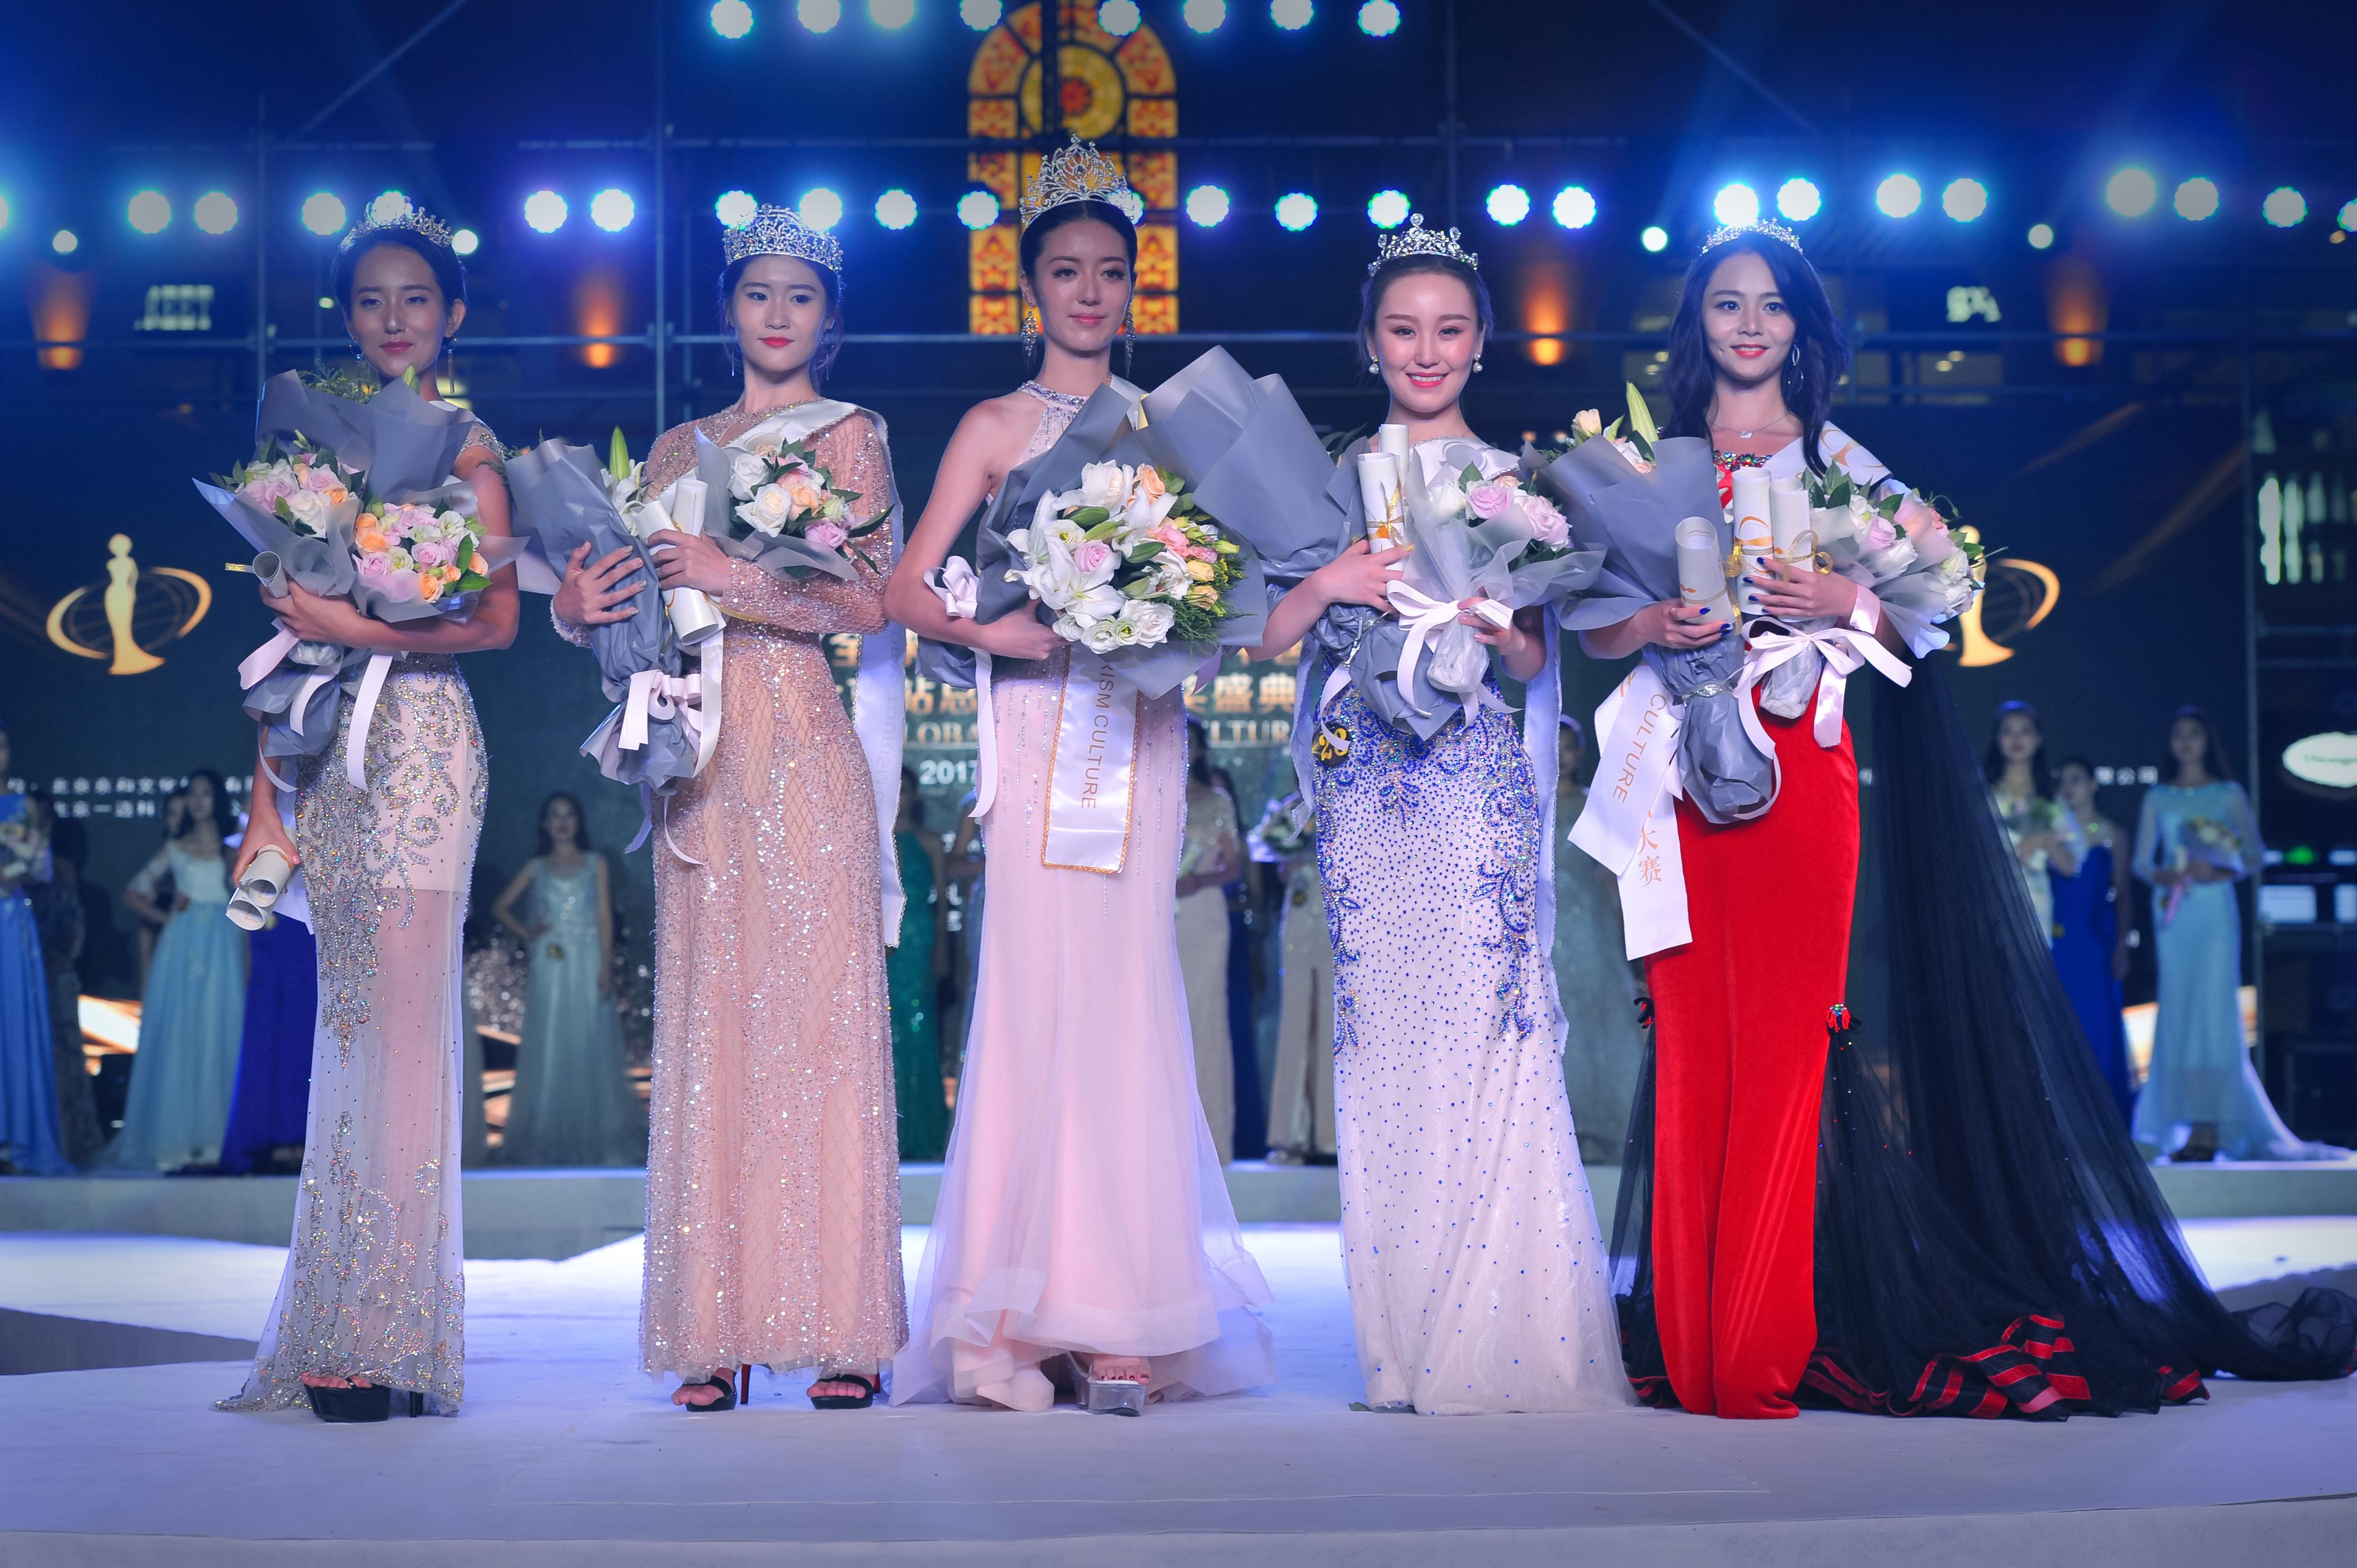 皇莎国际2017全球旅游文化小姐中国大赛总决赛即将开赛